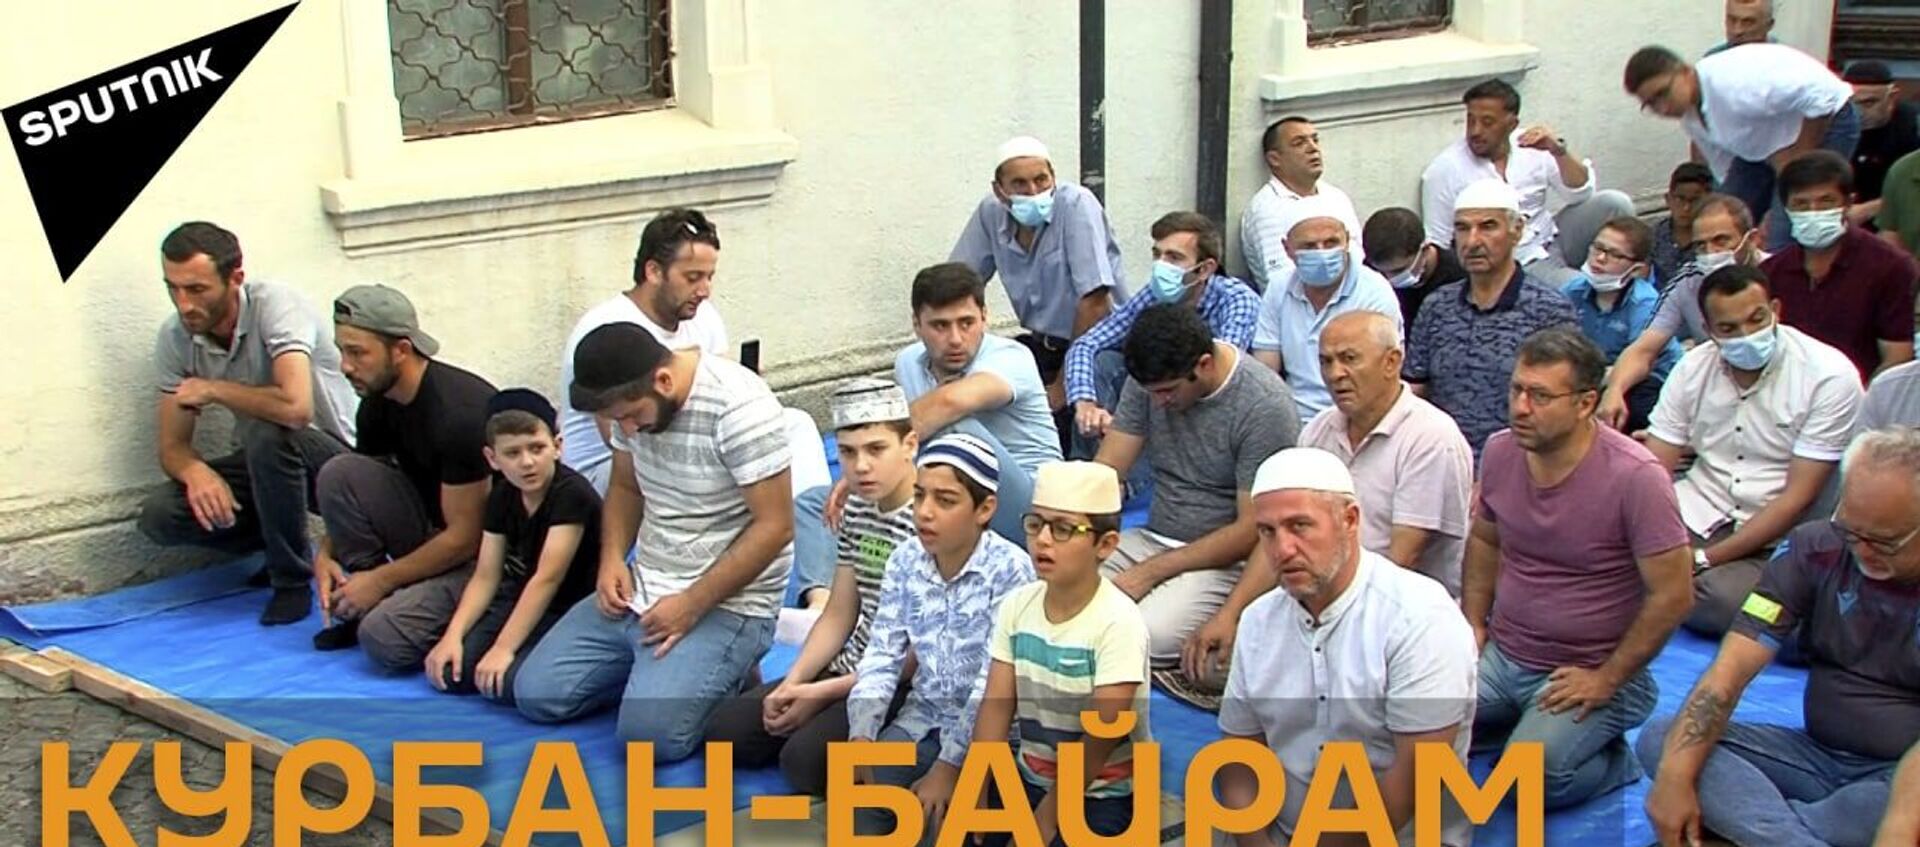 Мусульмане в Грузии отмечают начало праздника Курбан-байрам - видео - Sputnik Грузия, 1920, 20.07.2021